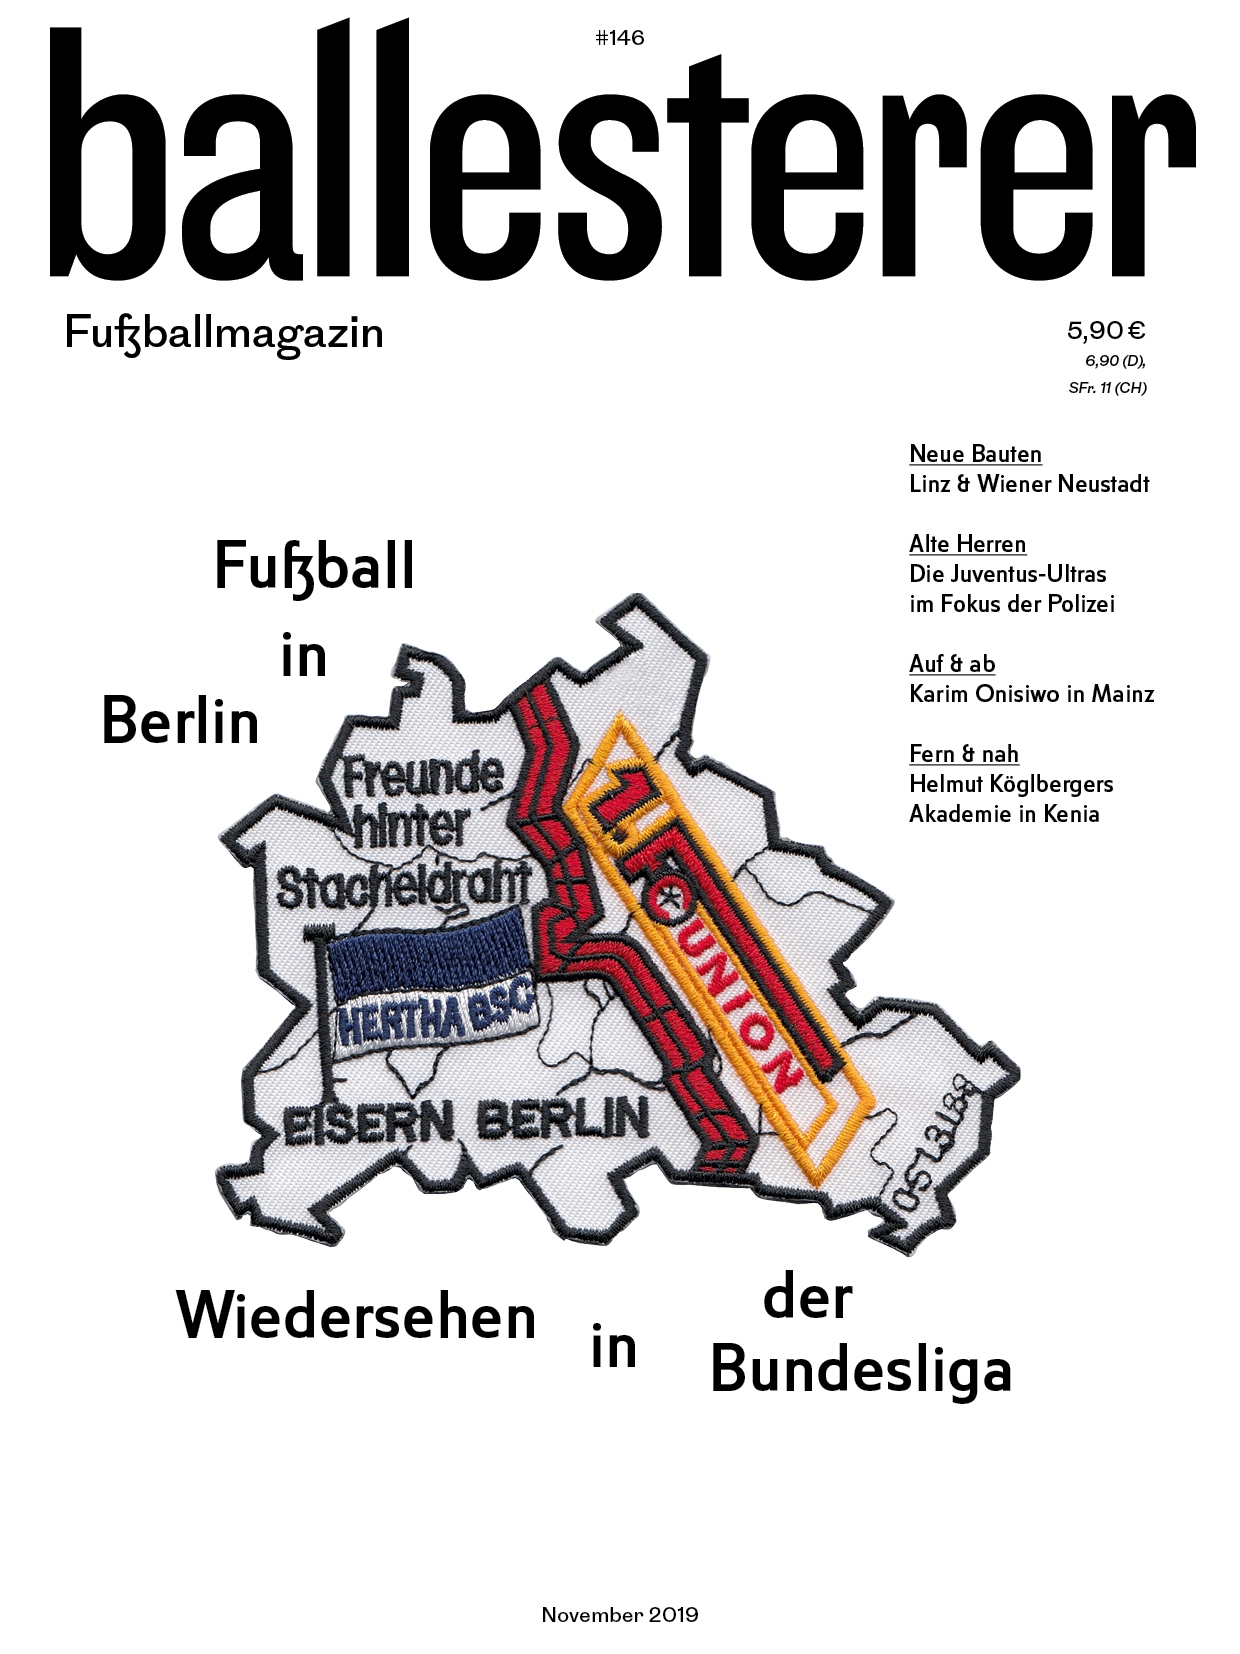 ballesterer 146: Fußball in Berlin